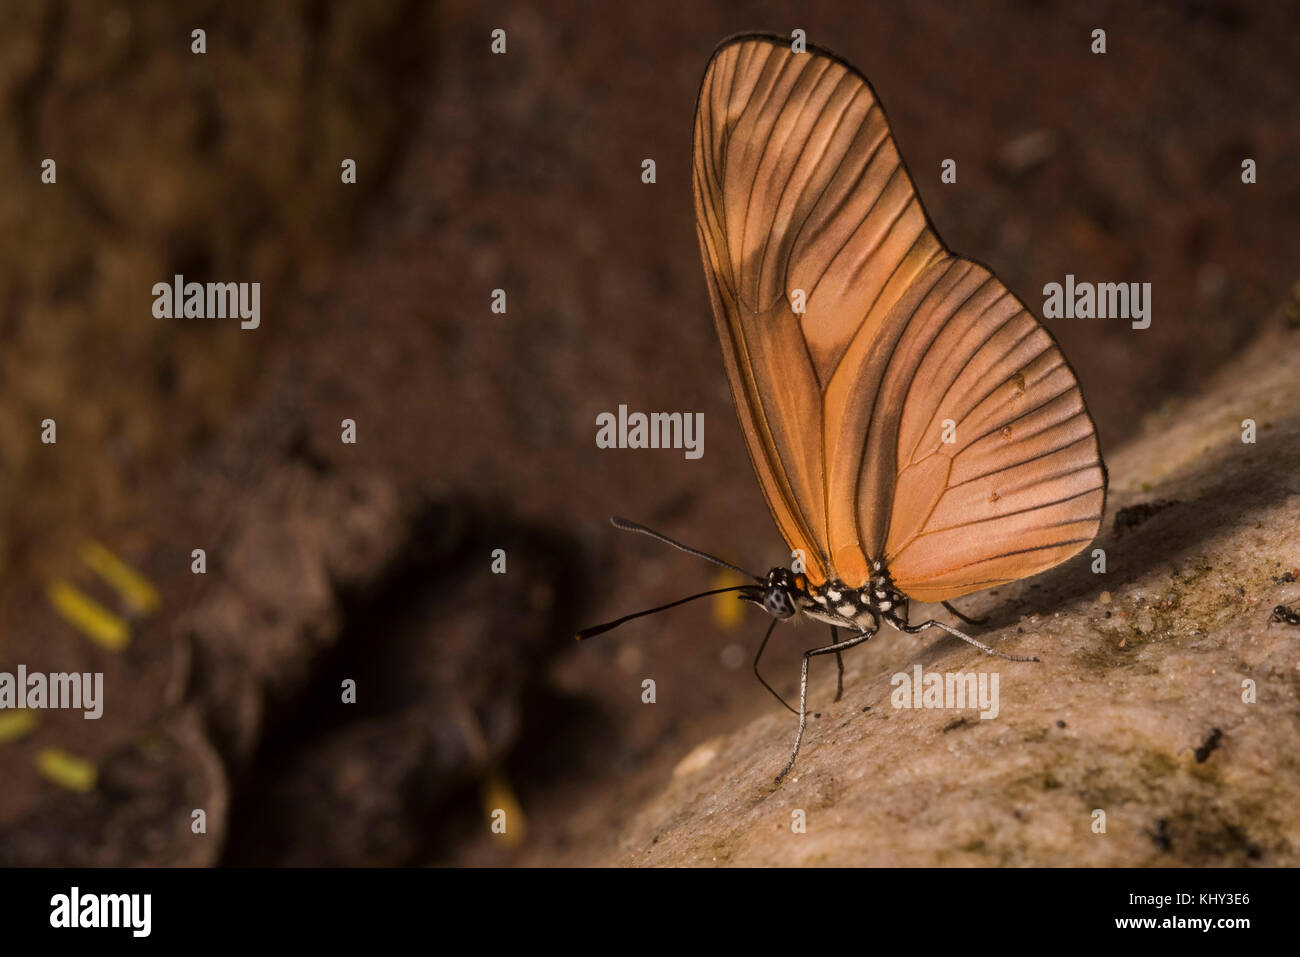 Probablemente una especie Heliconius, un grupo de mariposas ampliamente estudiado en relación a la mímica y evolución. Foto de stock